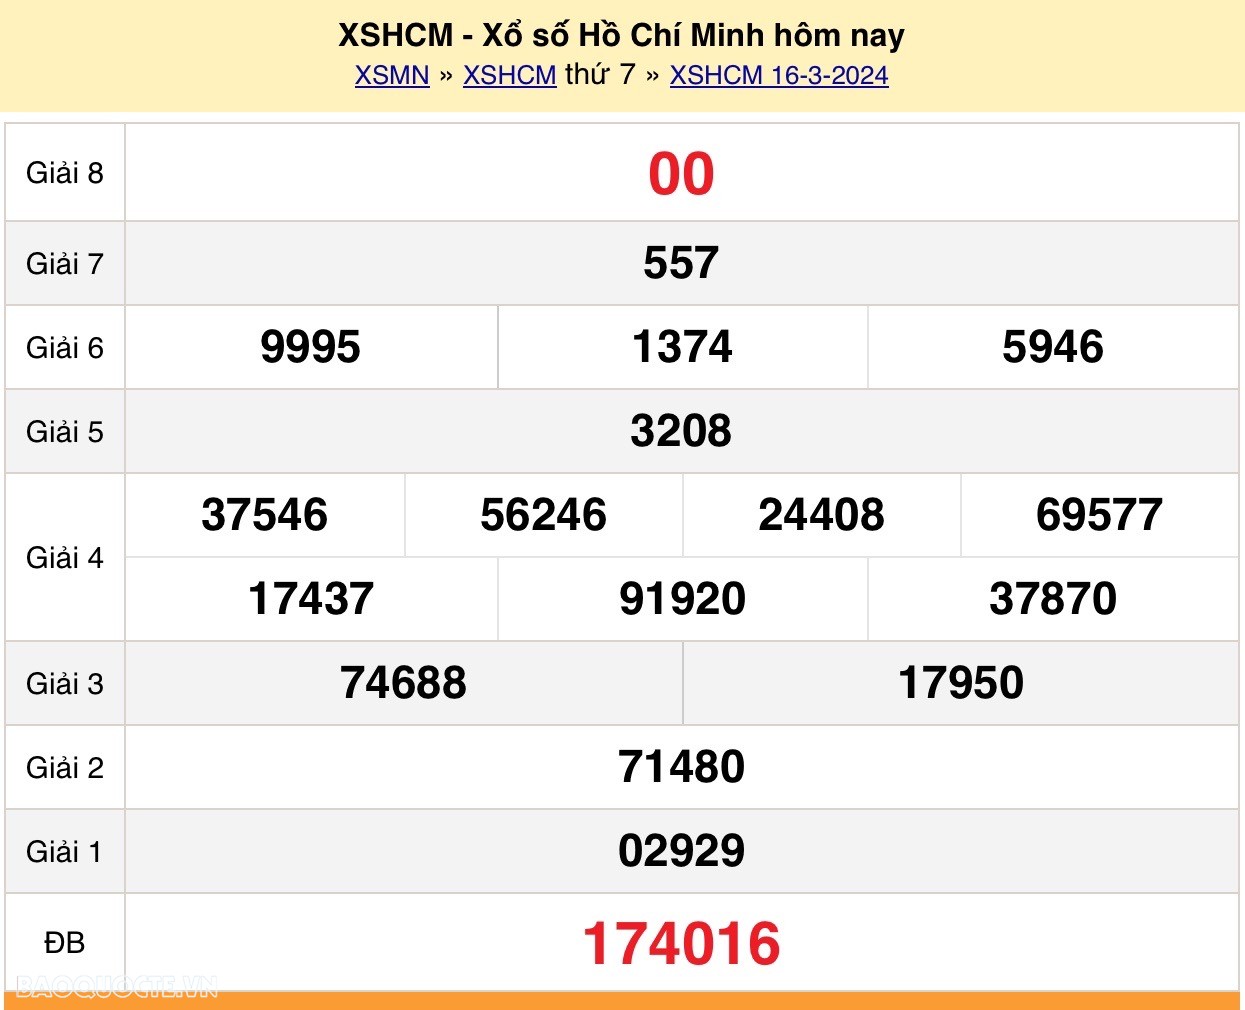 XSHCM 18/3, Trực tiếp kết quả xổ số TP Hồ Chí Minh hôm nay 18/3/2024. KQXSHCM thứ 2